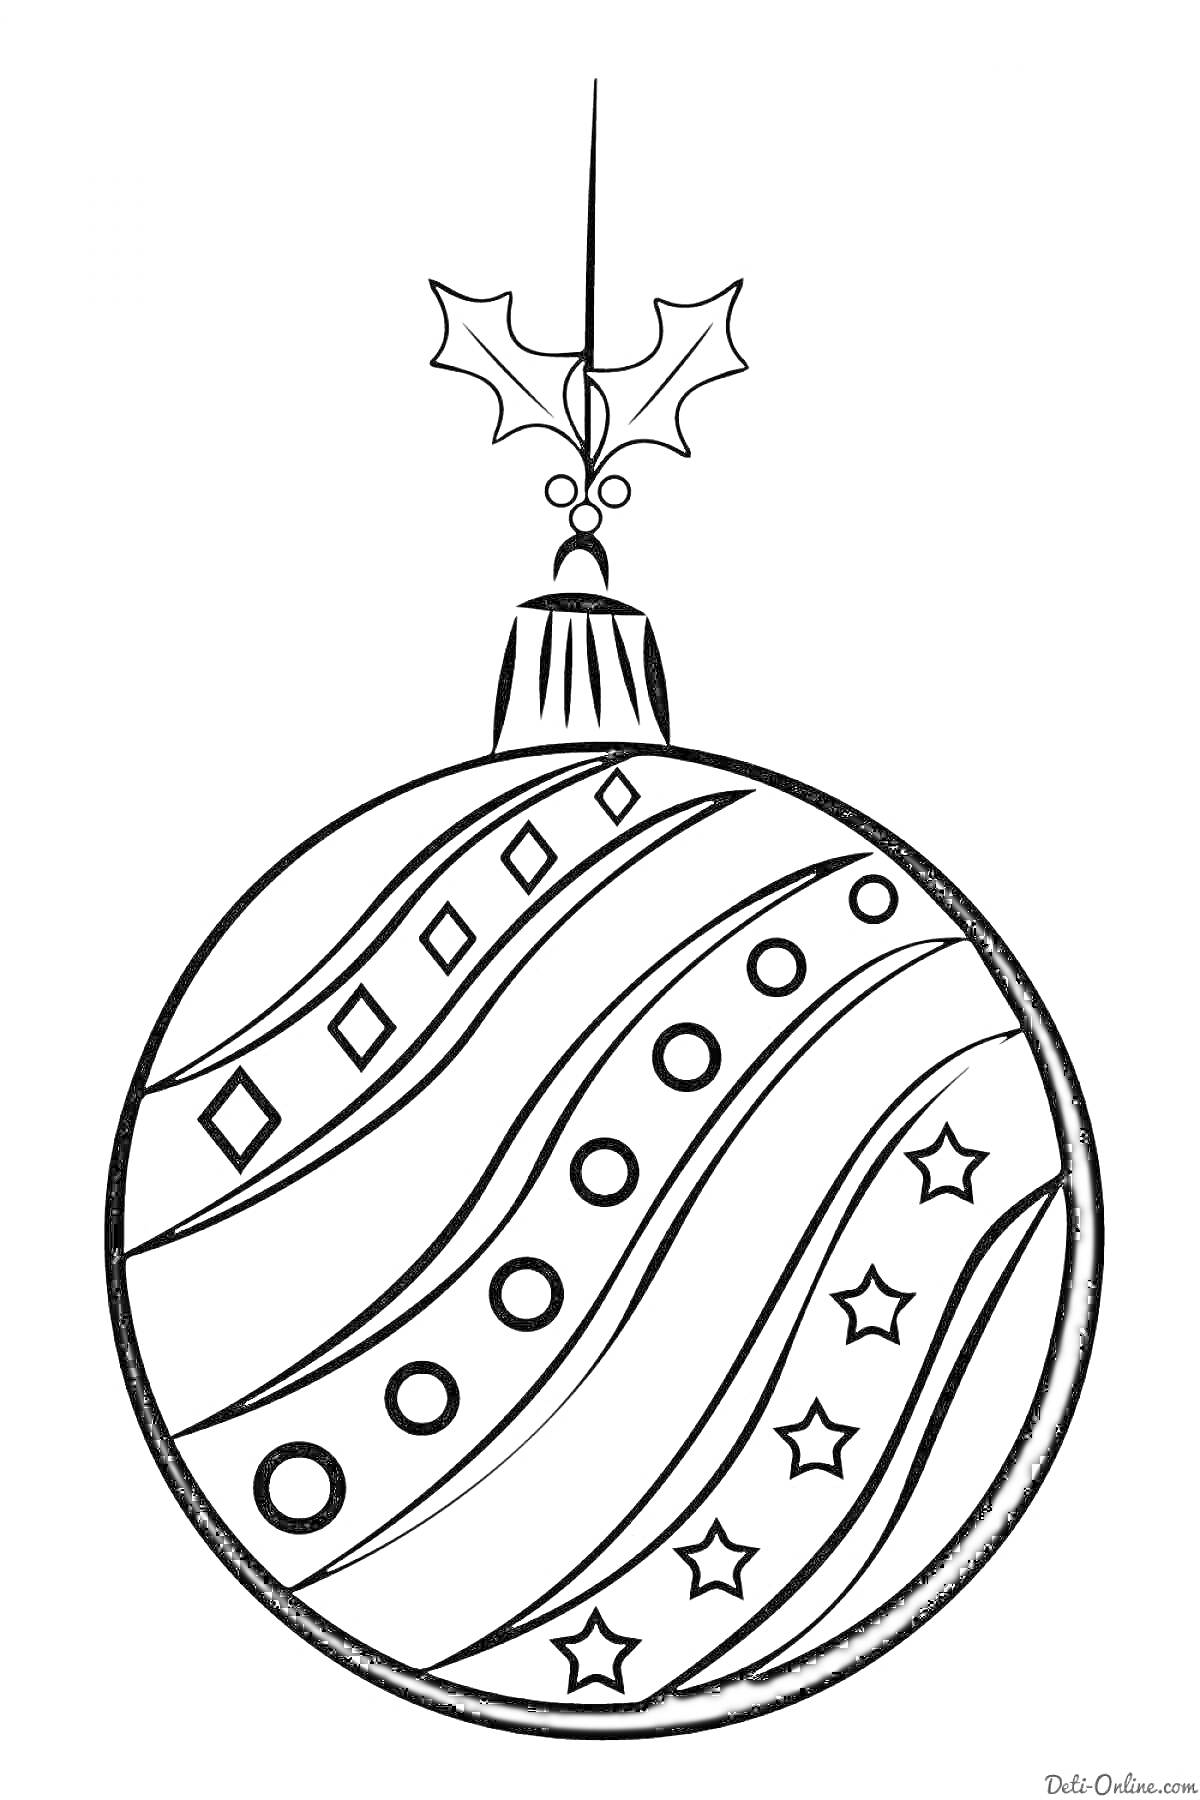 Раскраска елочный шарик с узором из ромбов, кругов и звезд, с петелькой и украшением в виде остролиста